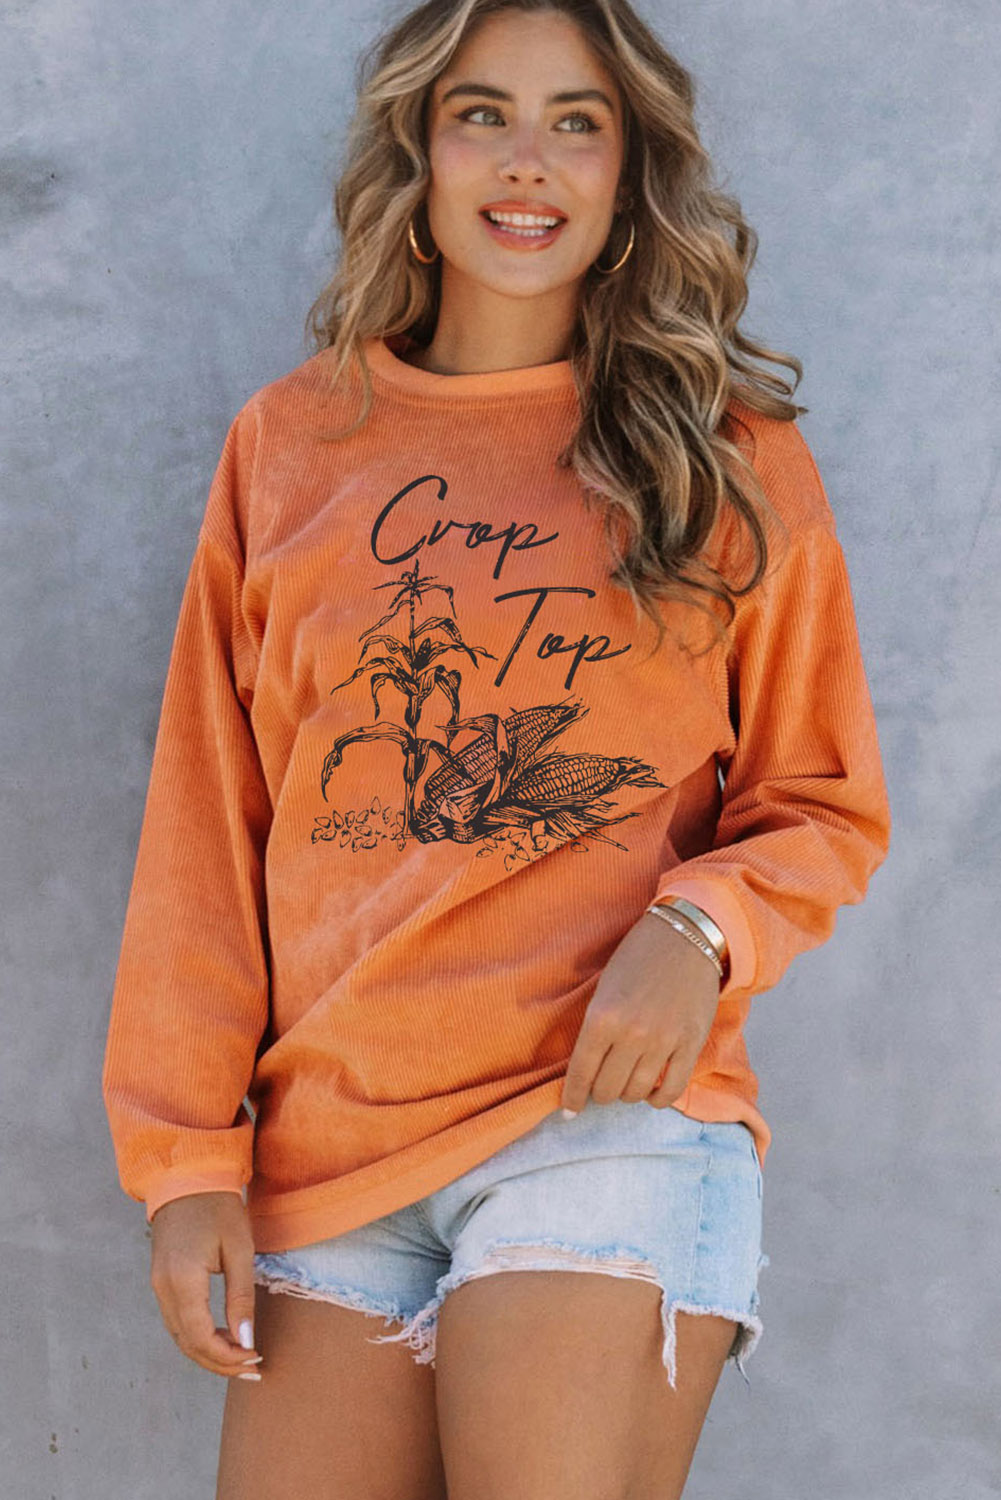 Azura Exchange Corn Graphic Orange Crop Top Sweatshirt